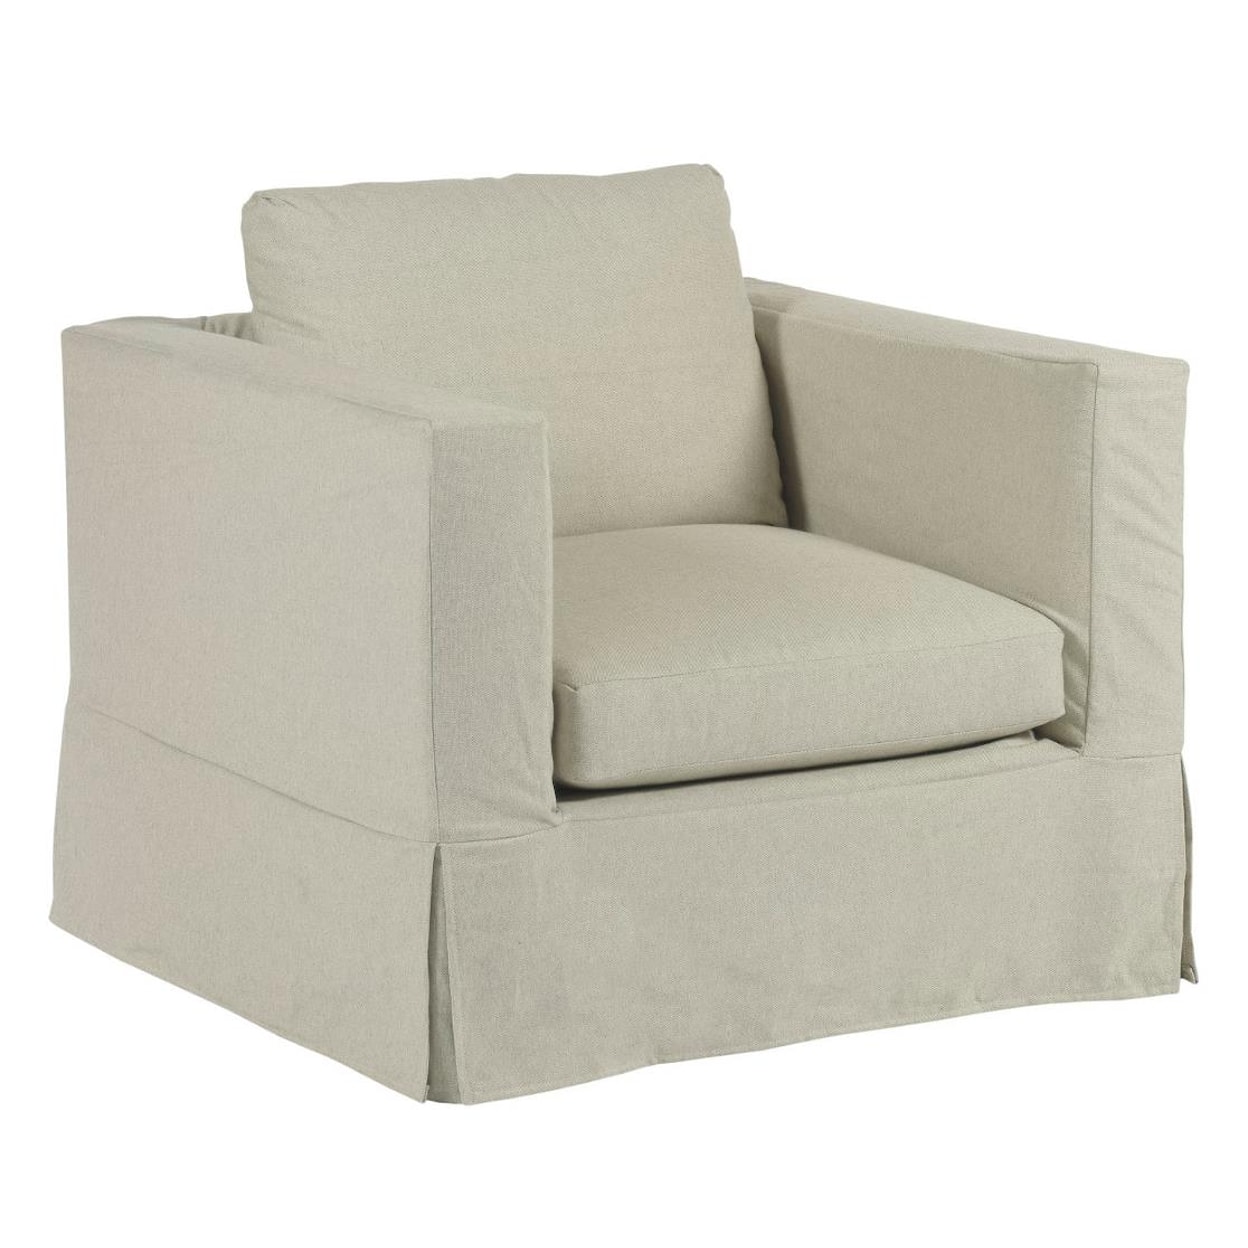 Kincaid Furniture Sydney Chair